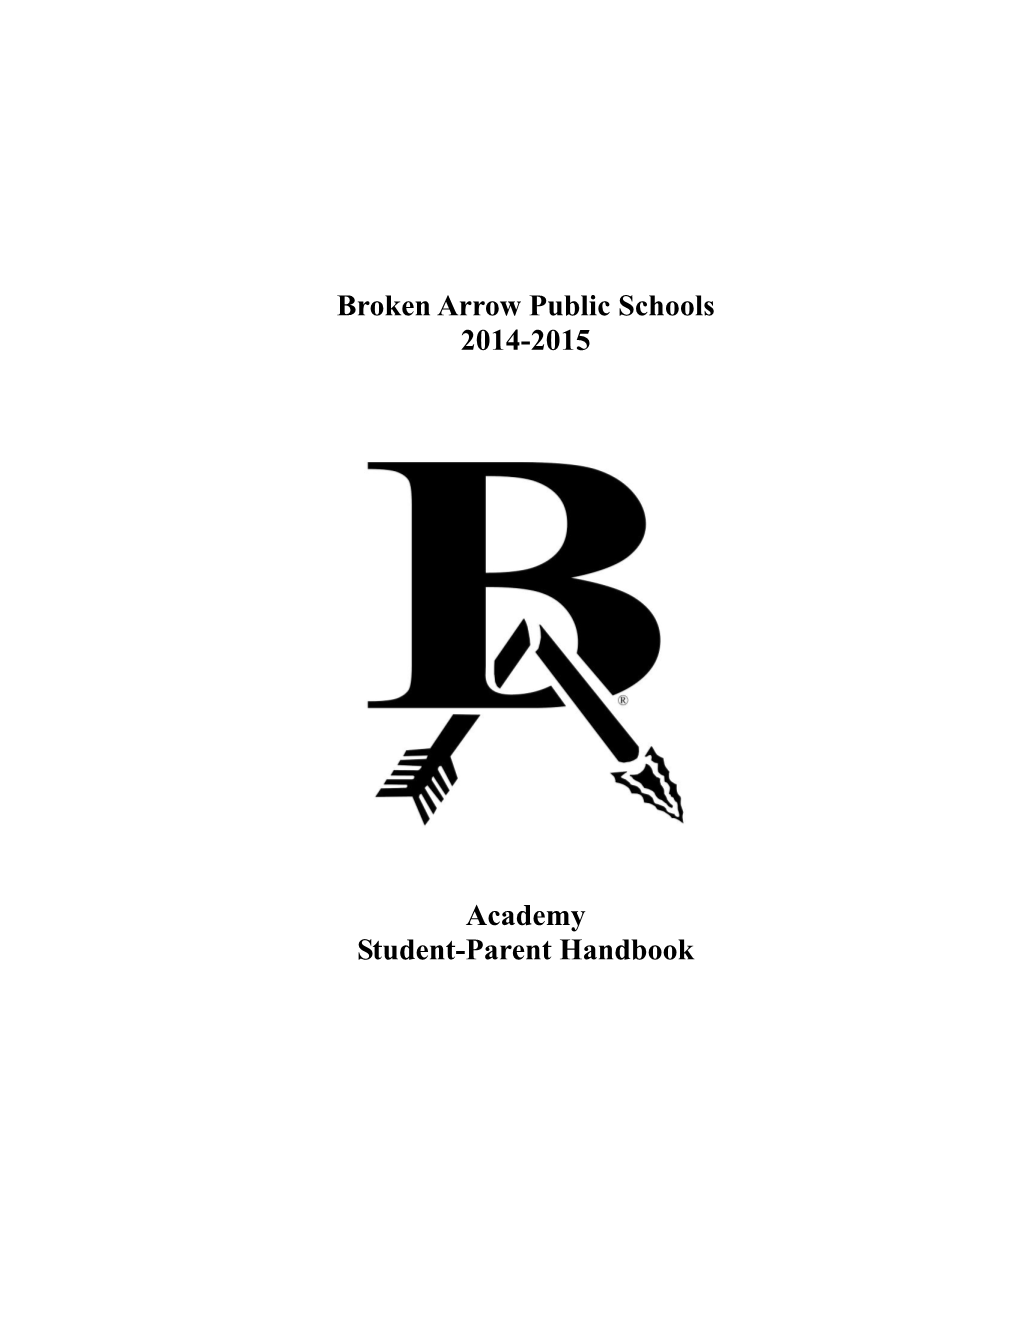 Broken Arrow Public Schools 2014-2015